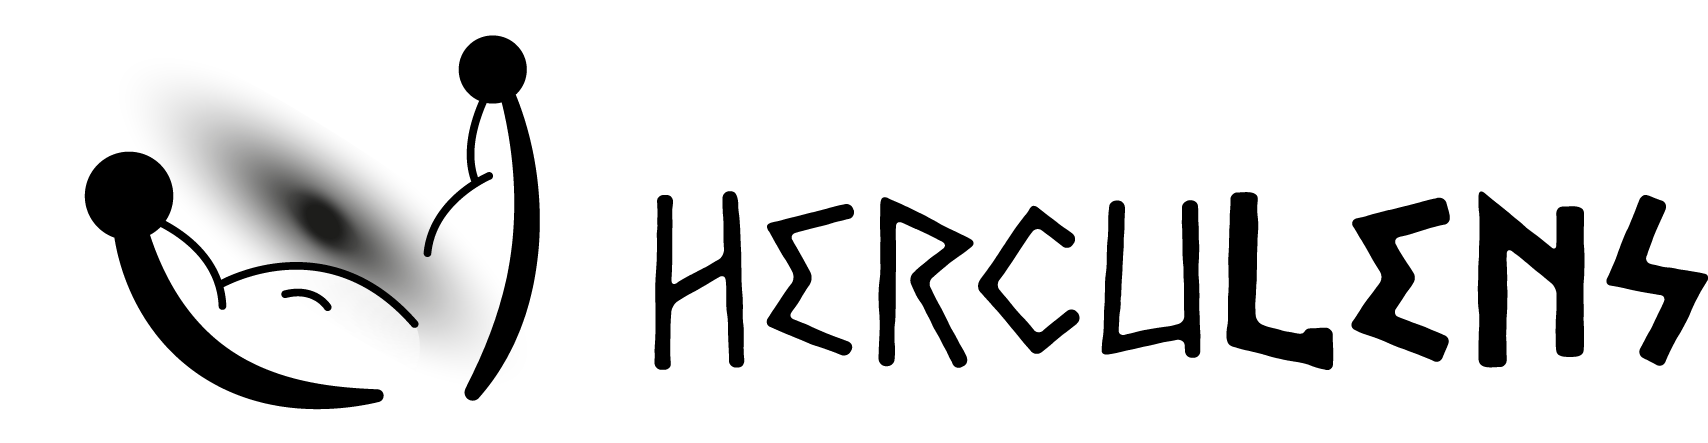 Herculens logo